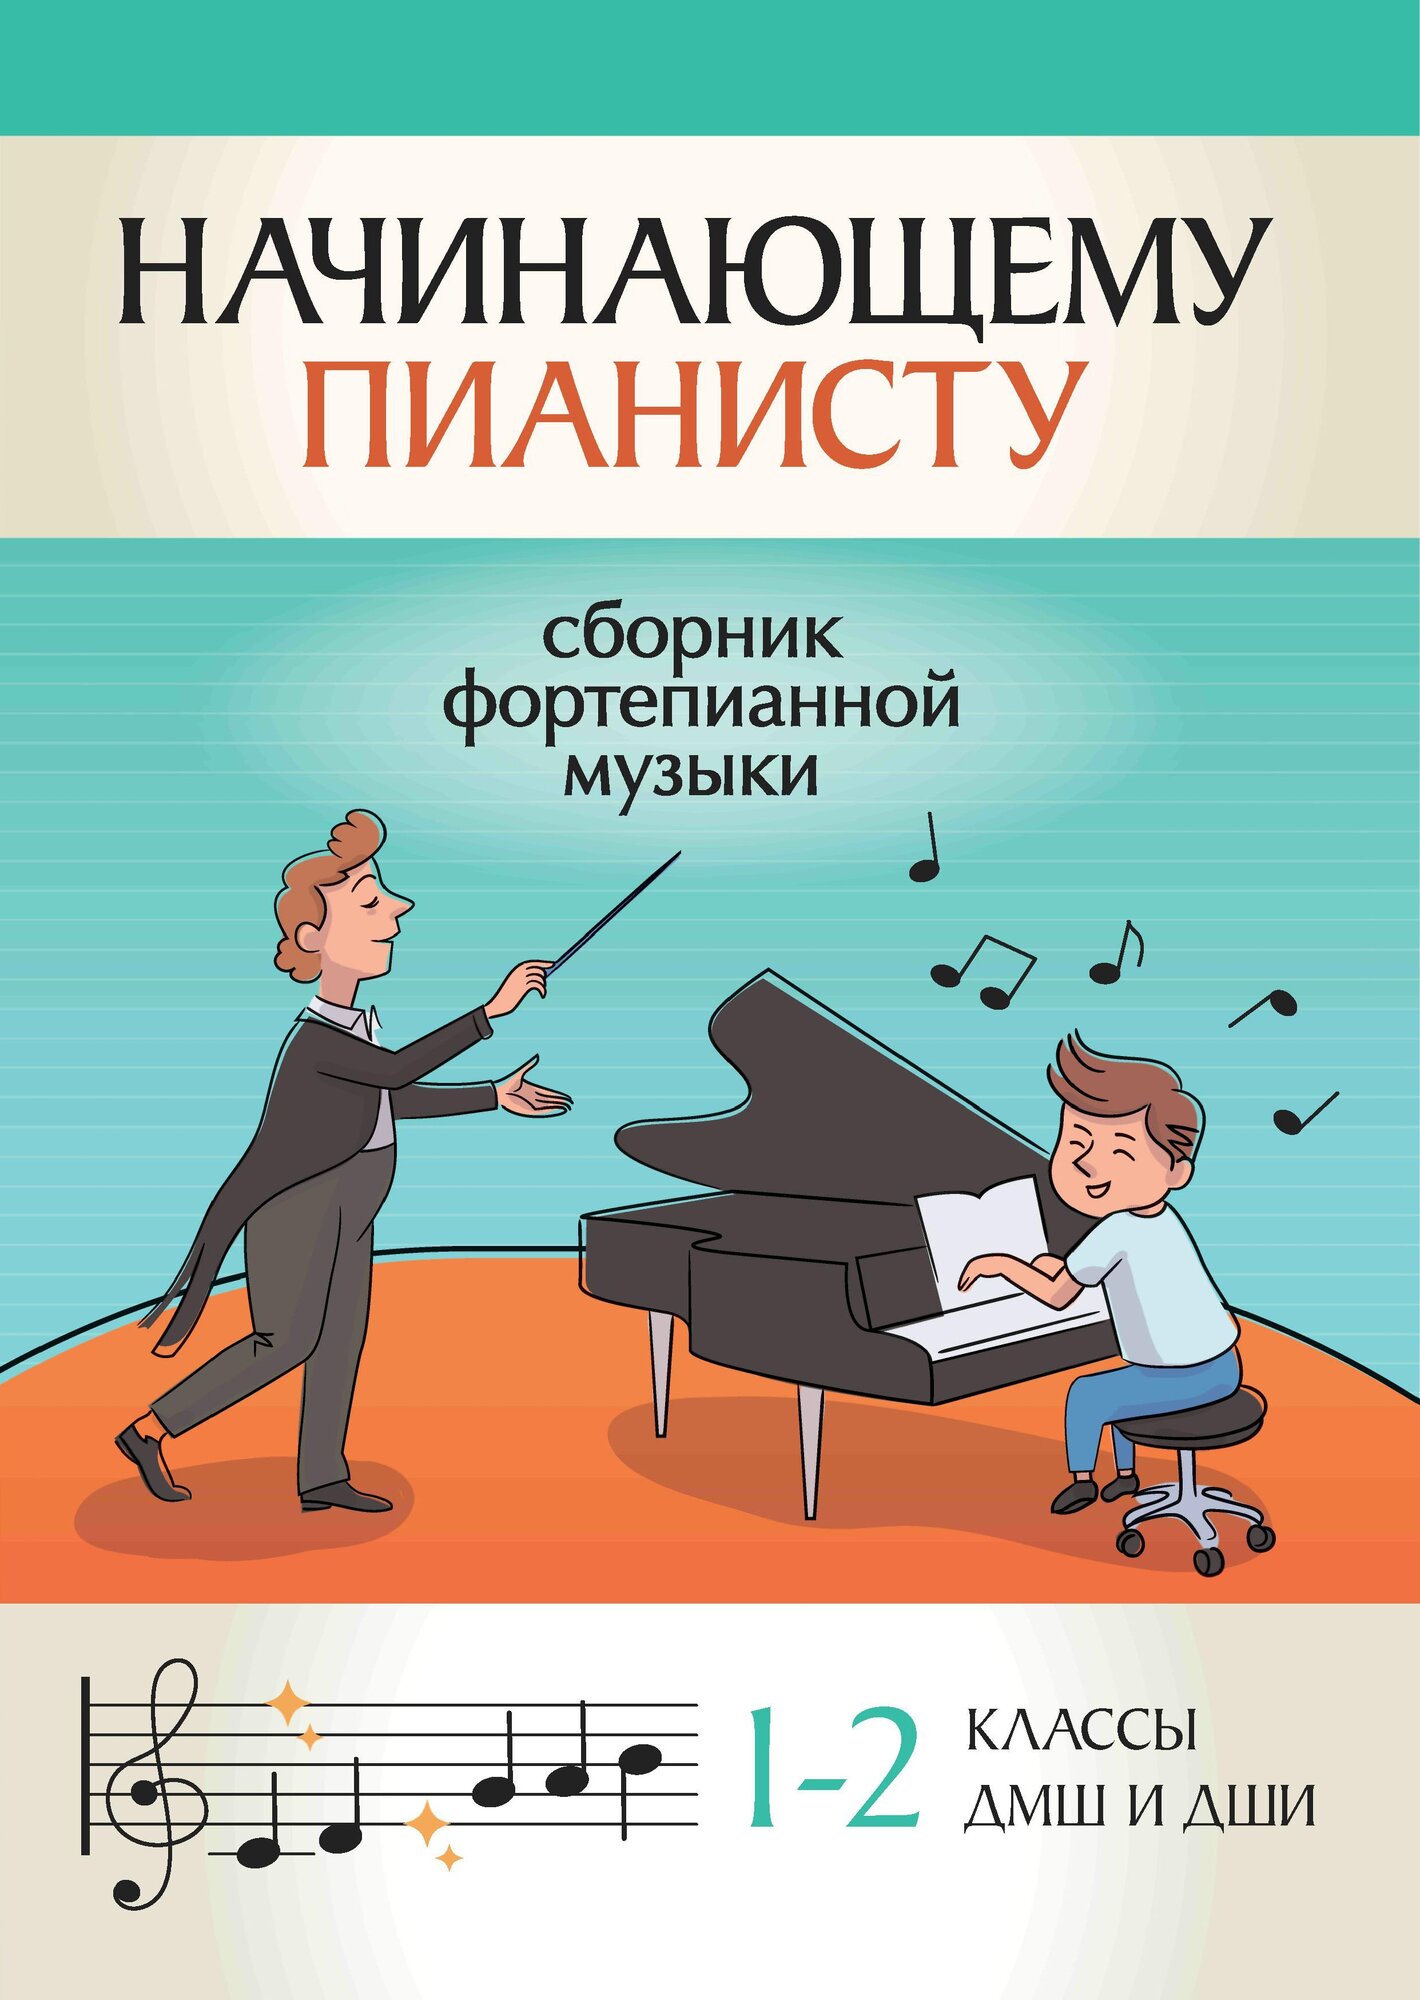 Начинающему пианисту: сборник фортепианной музыки: 1-2 класс